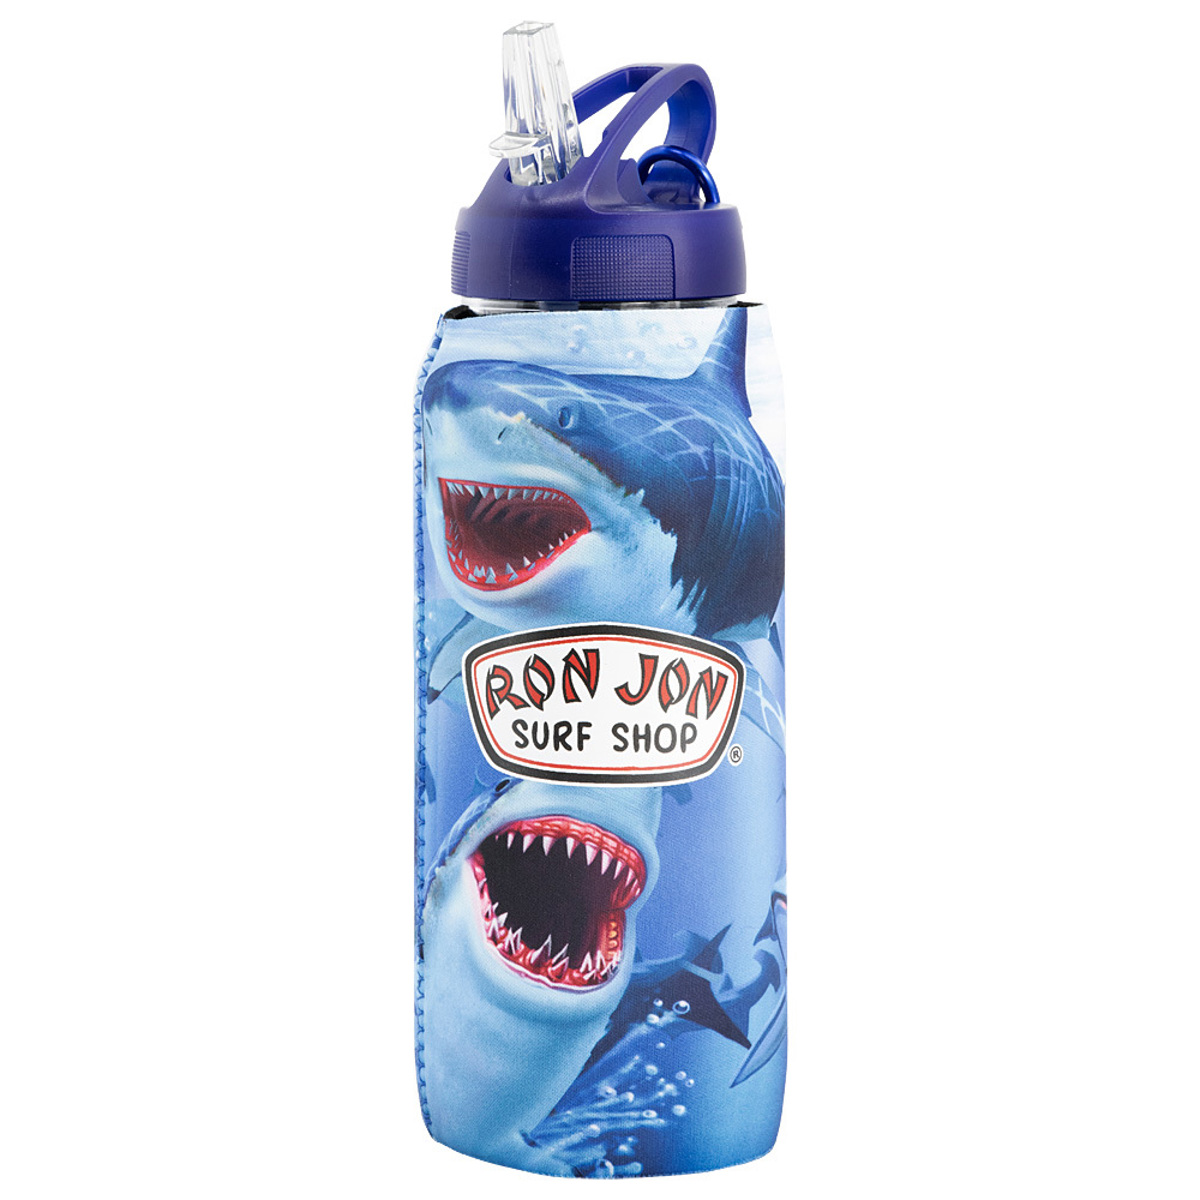 https://www.ronjonsurfshop.com/assets/8c/98/8c98c8d4-12fe-49e7-be46-fcfa77b360b8/d1200x1200-10820652000-ron-jon-shark-sports-water-bottle-front.jpg